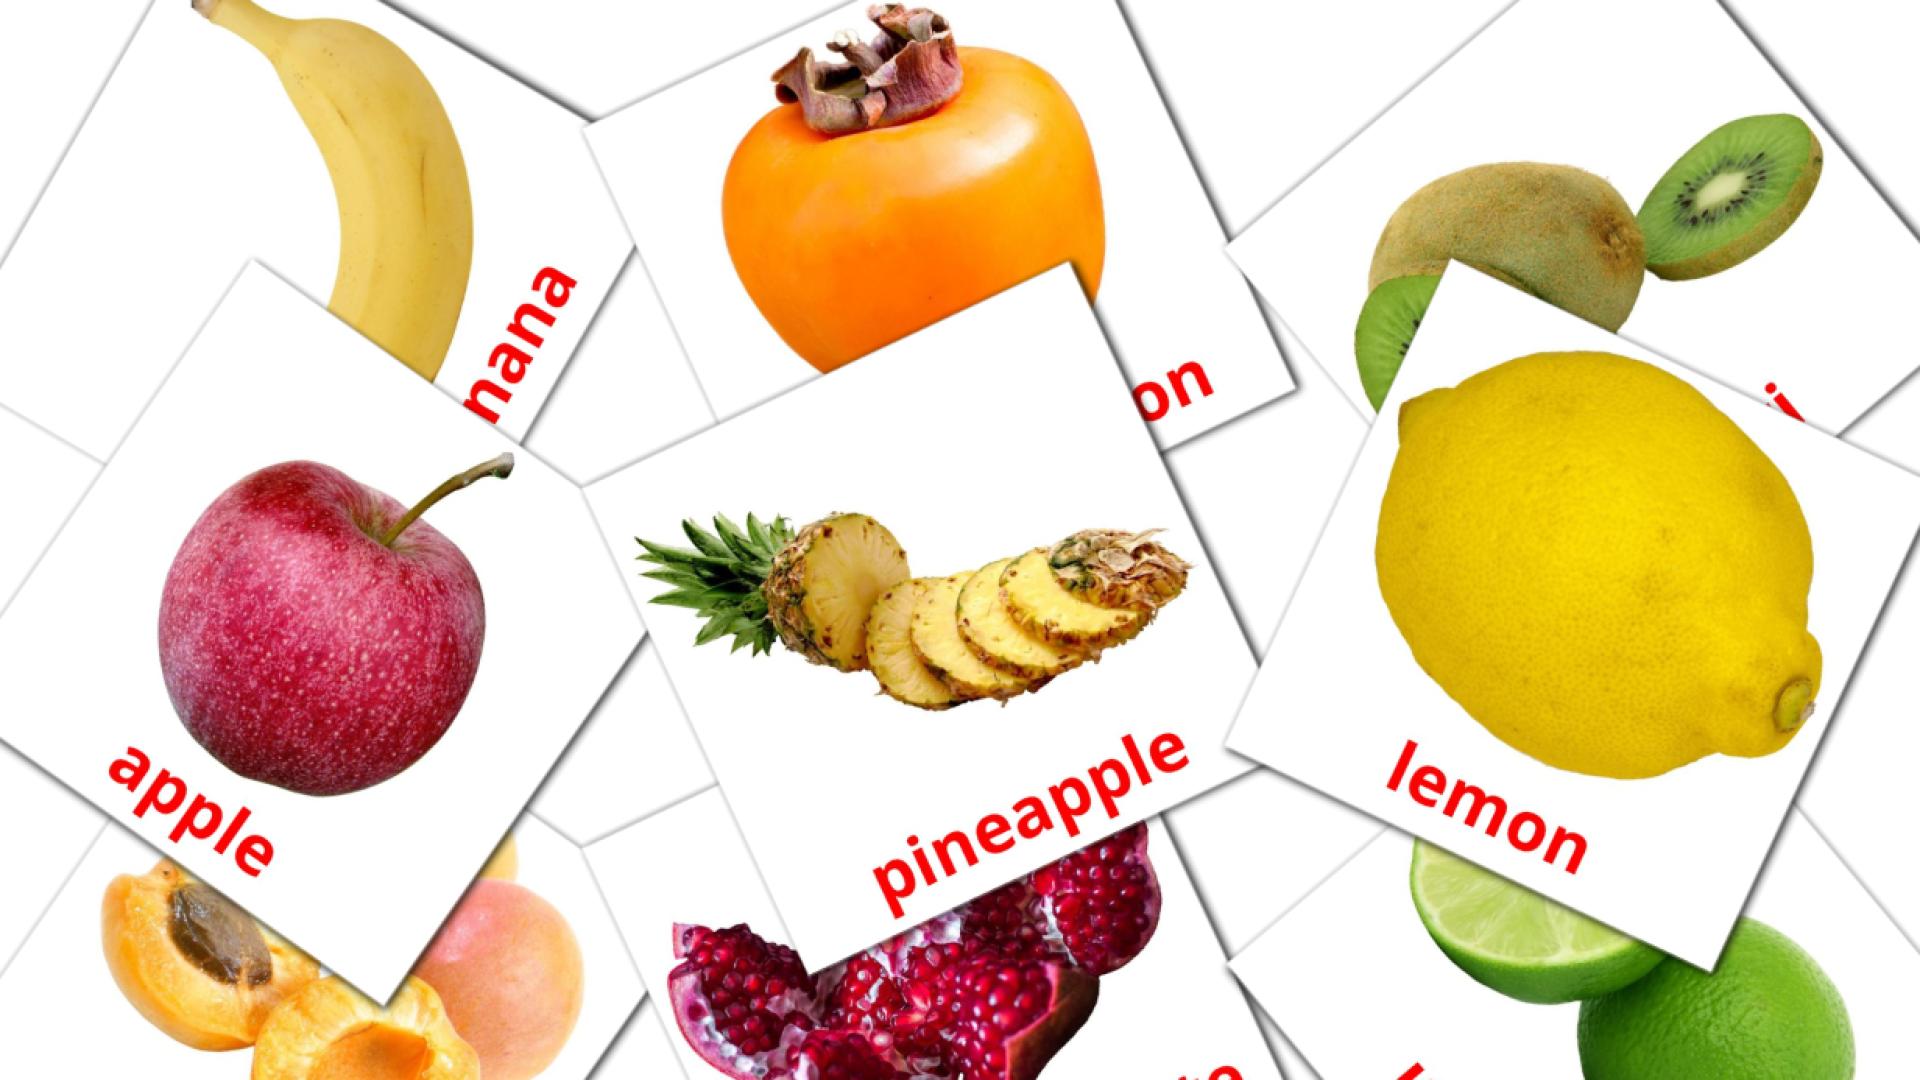 Bildkarten für Fruits